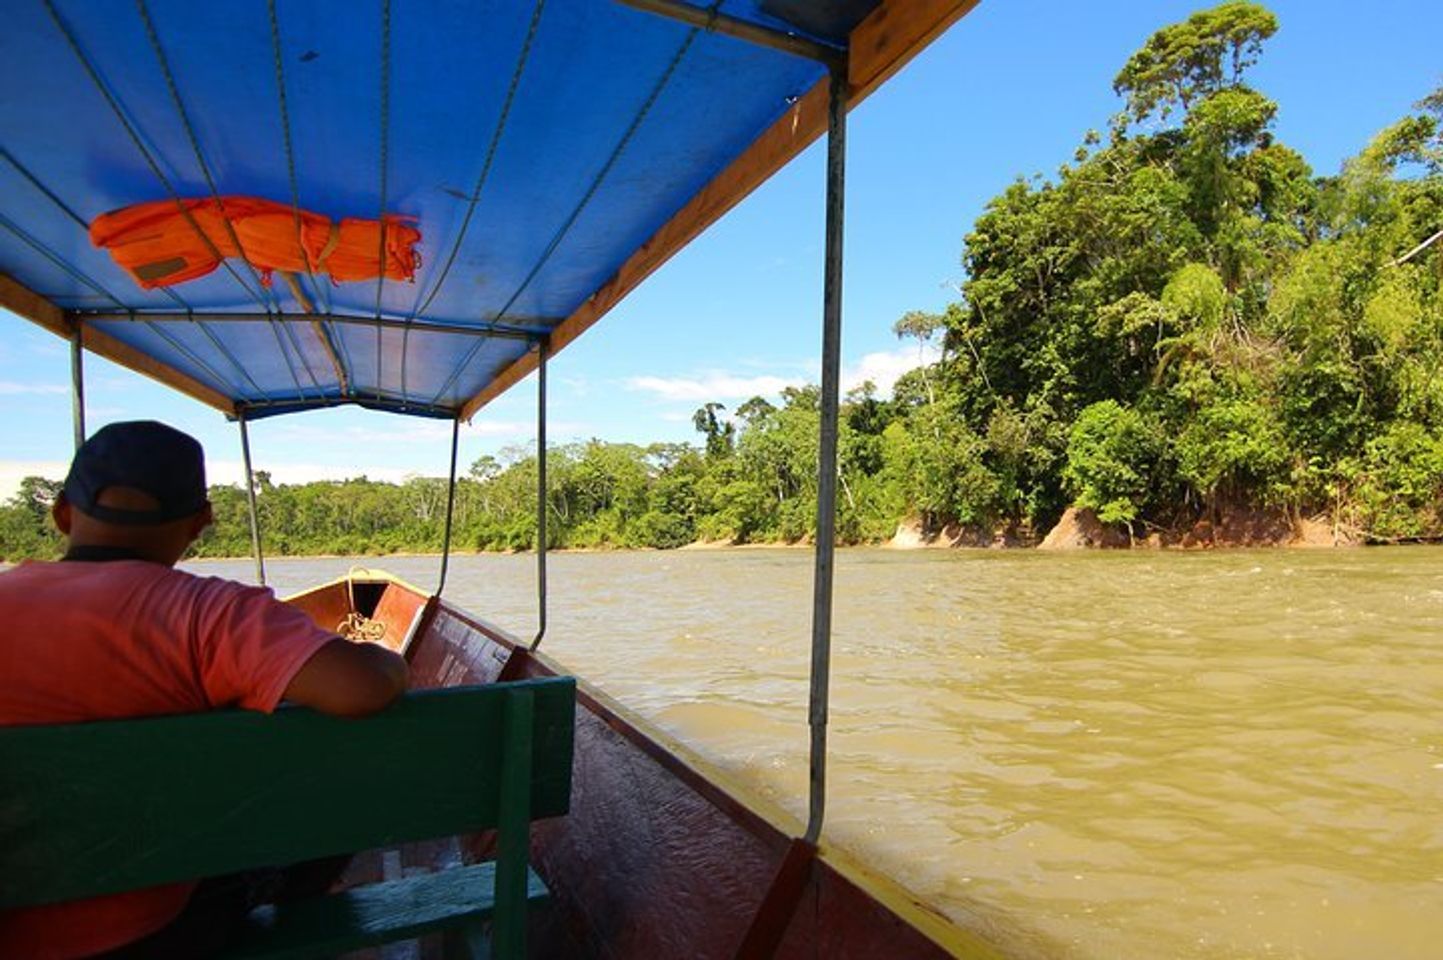 Dschungelträume entfesselt: Unvergessliche Amazonas-Touren in Leticia!